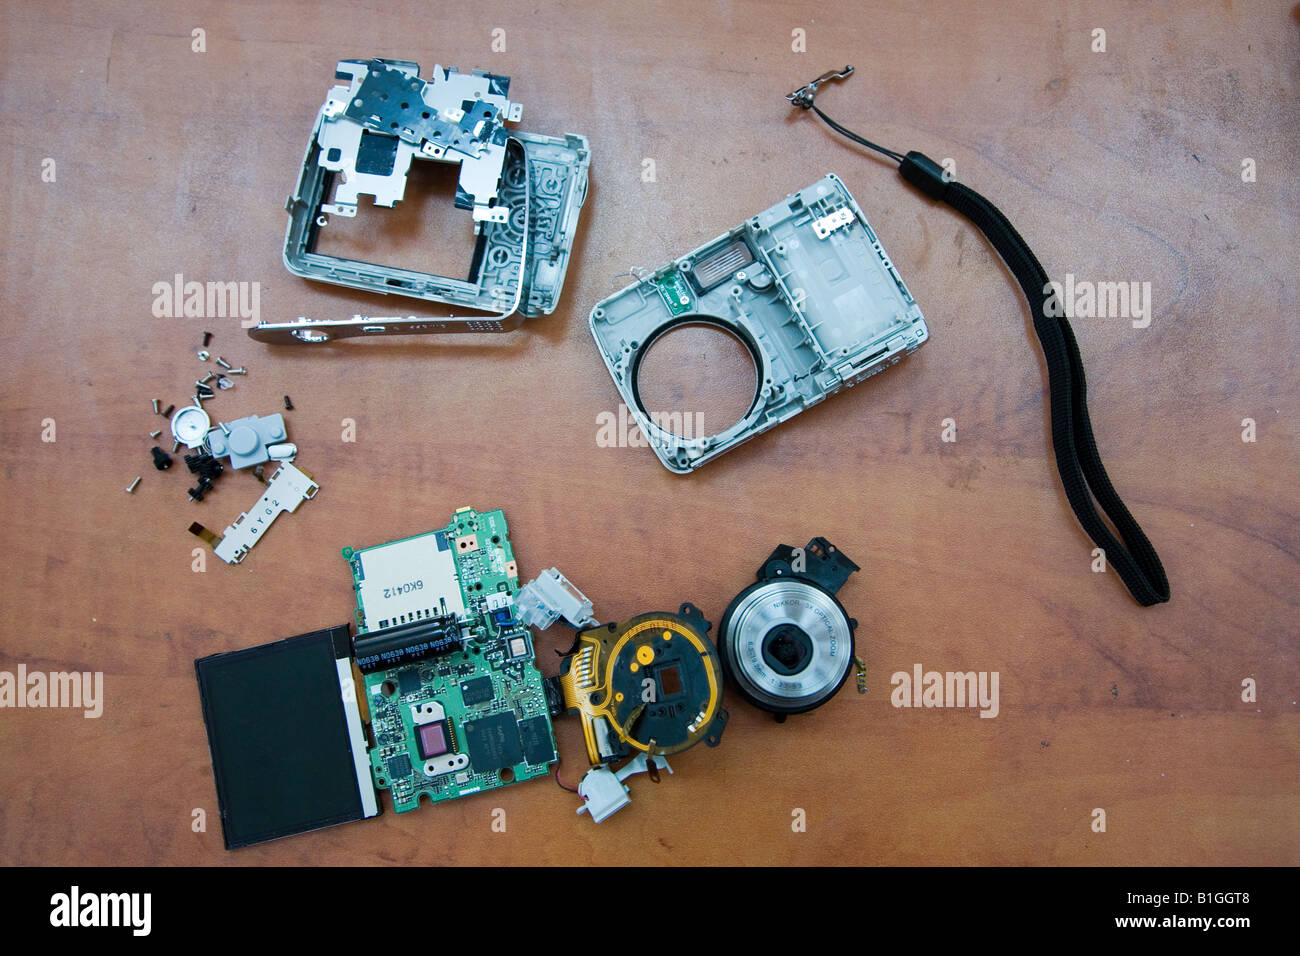 Photo of disassembled Nikon digital camera displaying all major components Shot June 2008 Stock Photo